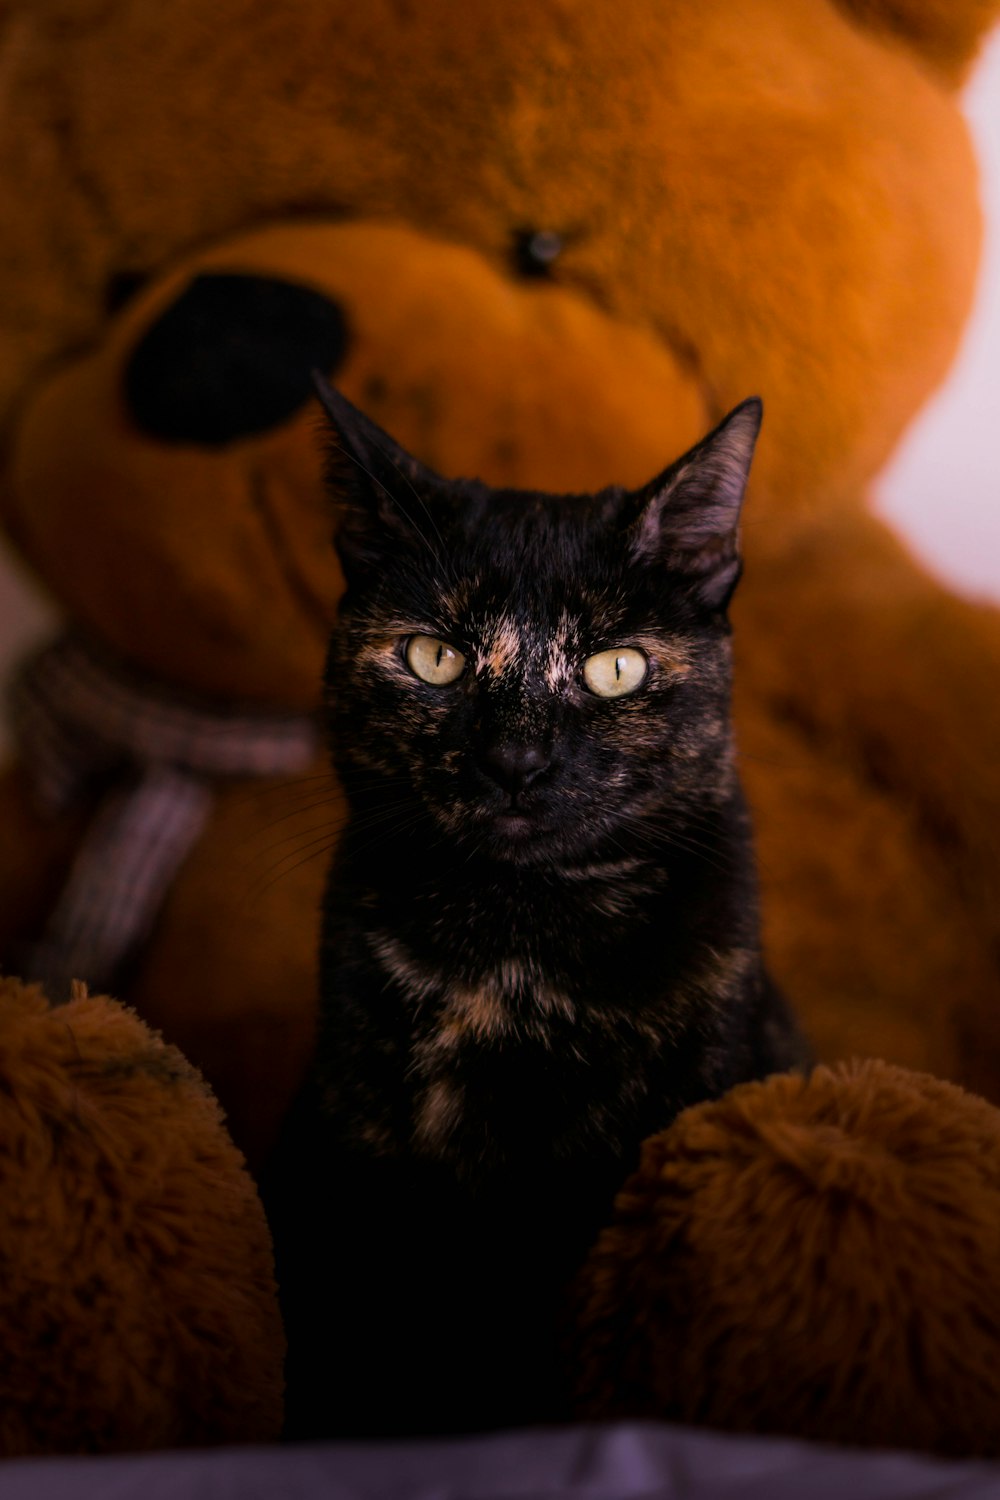 갈색 테디 베어 옆에 앉아있는 검은 고양이